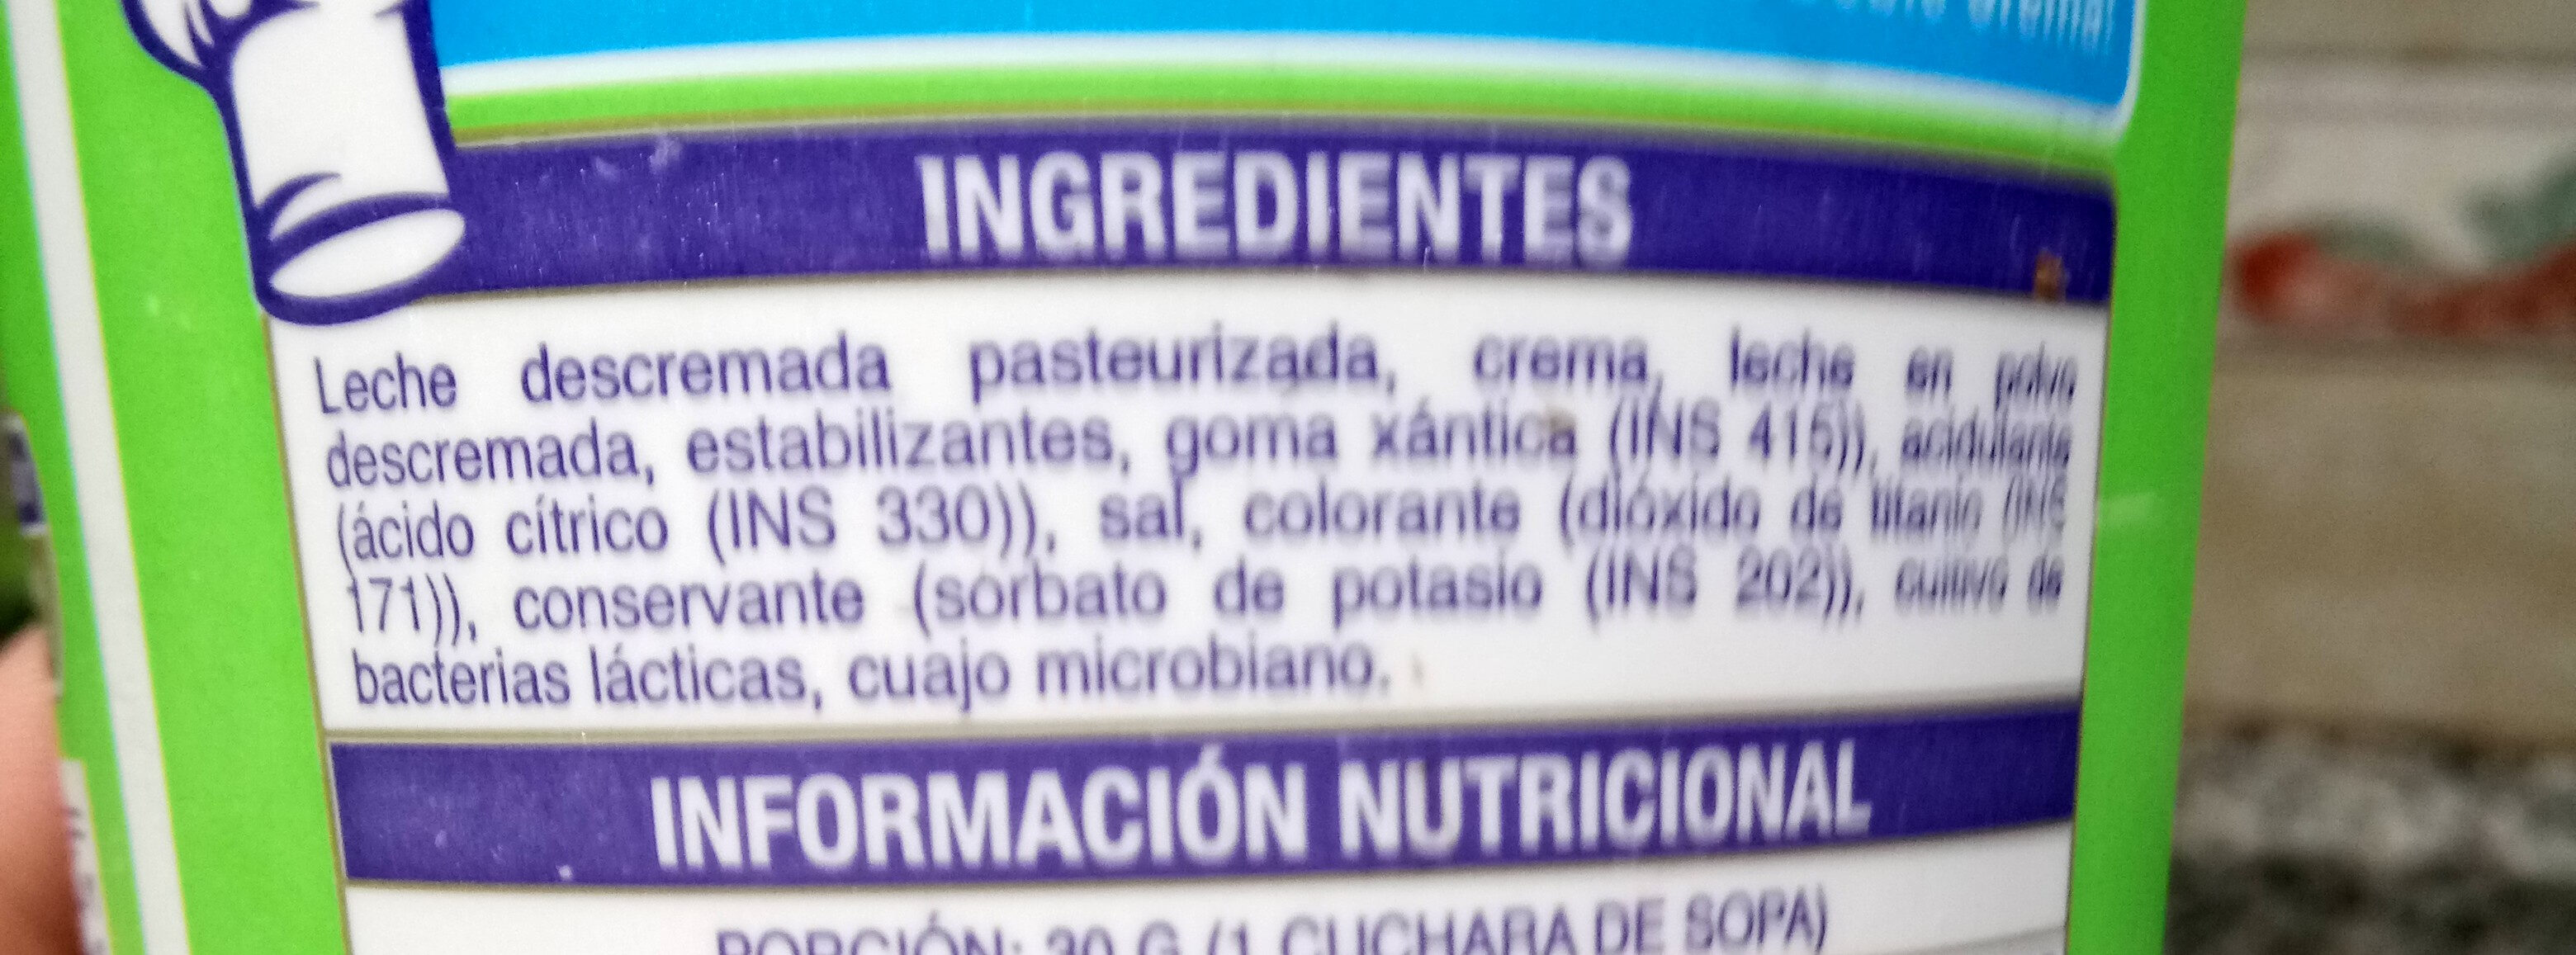 Queso crema light La Paulina - Ingredients - es